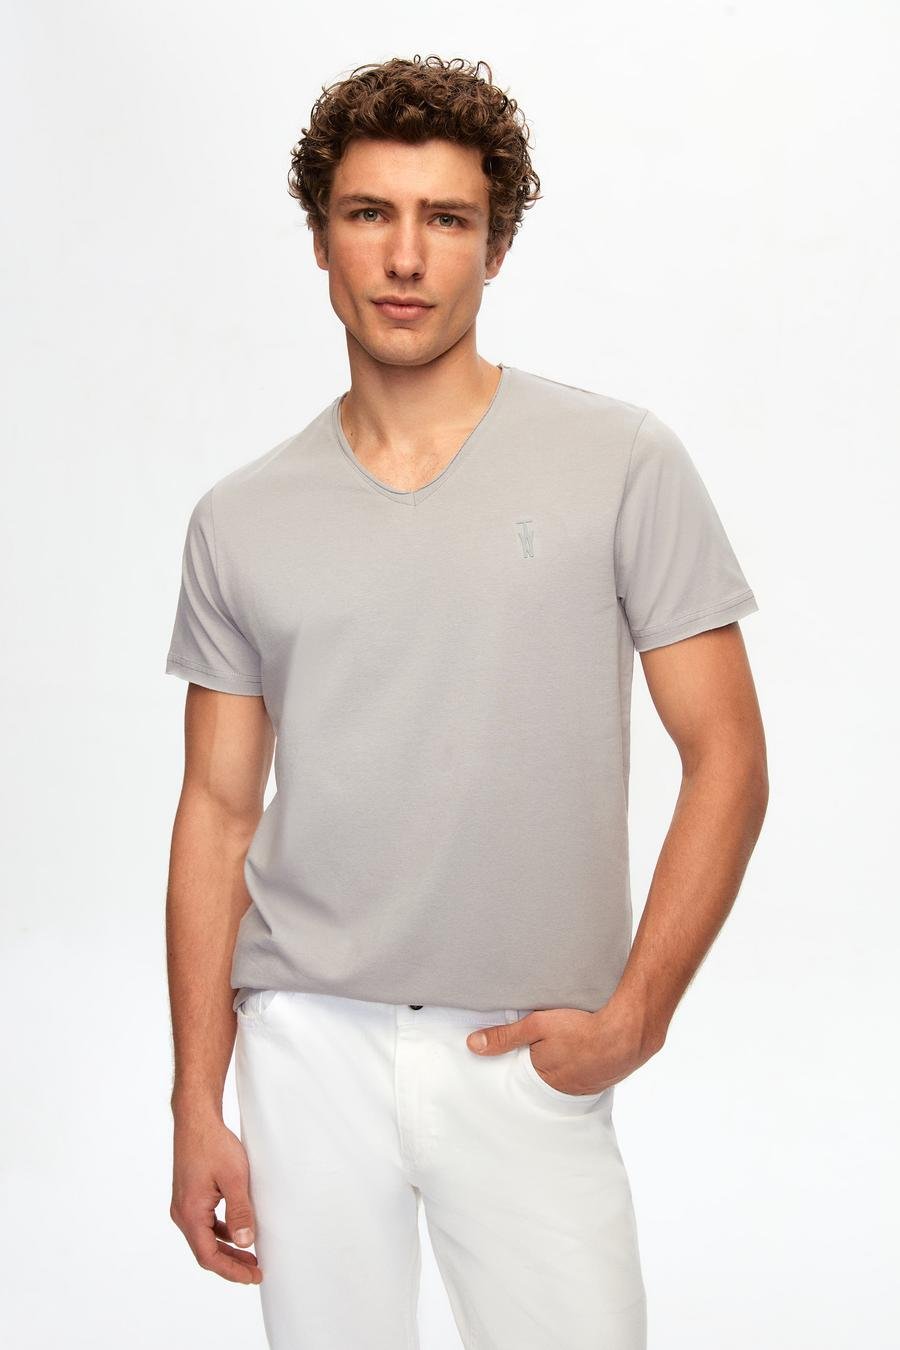 Twn Slim Fit Gri Düz Örgü Pamuklu Logo Baskılı T-Shirt - 8683218252625 | D'S Damat